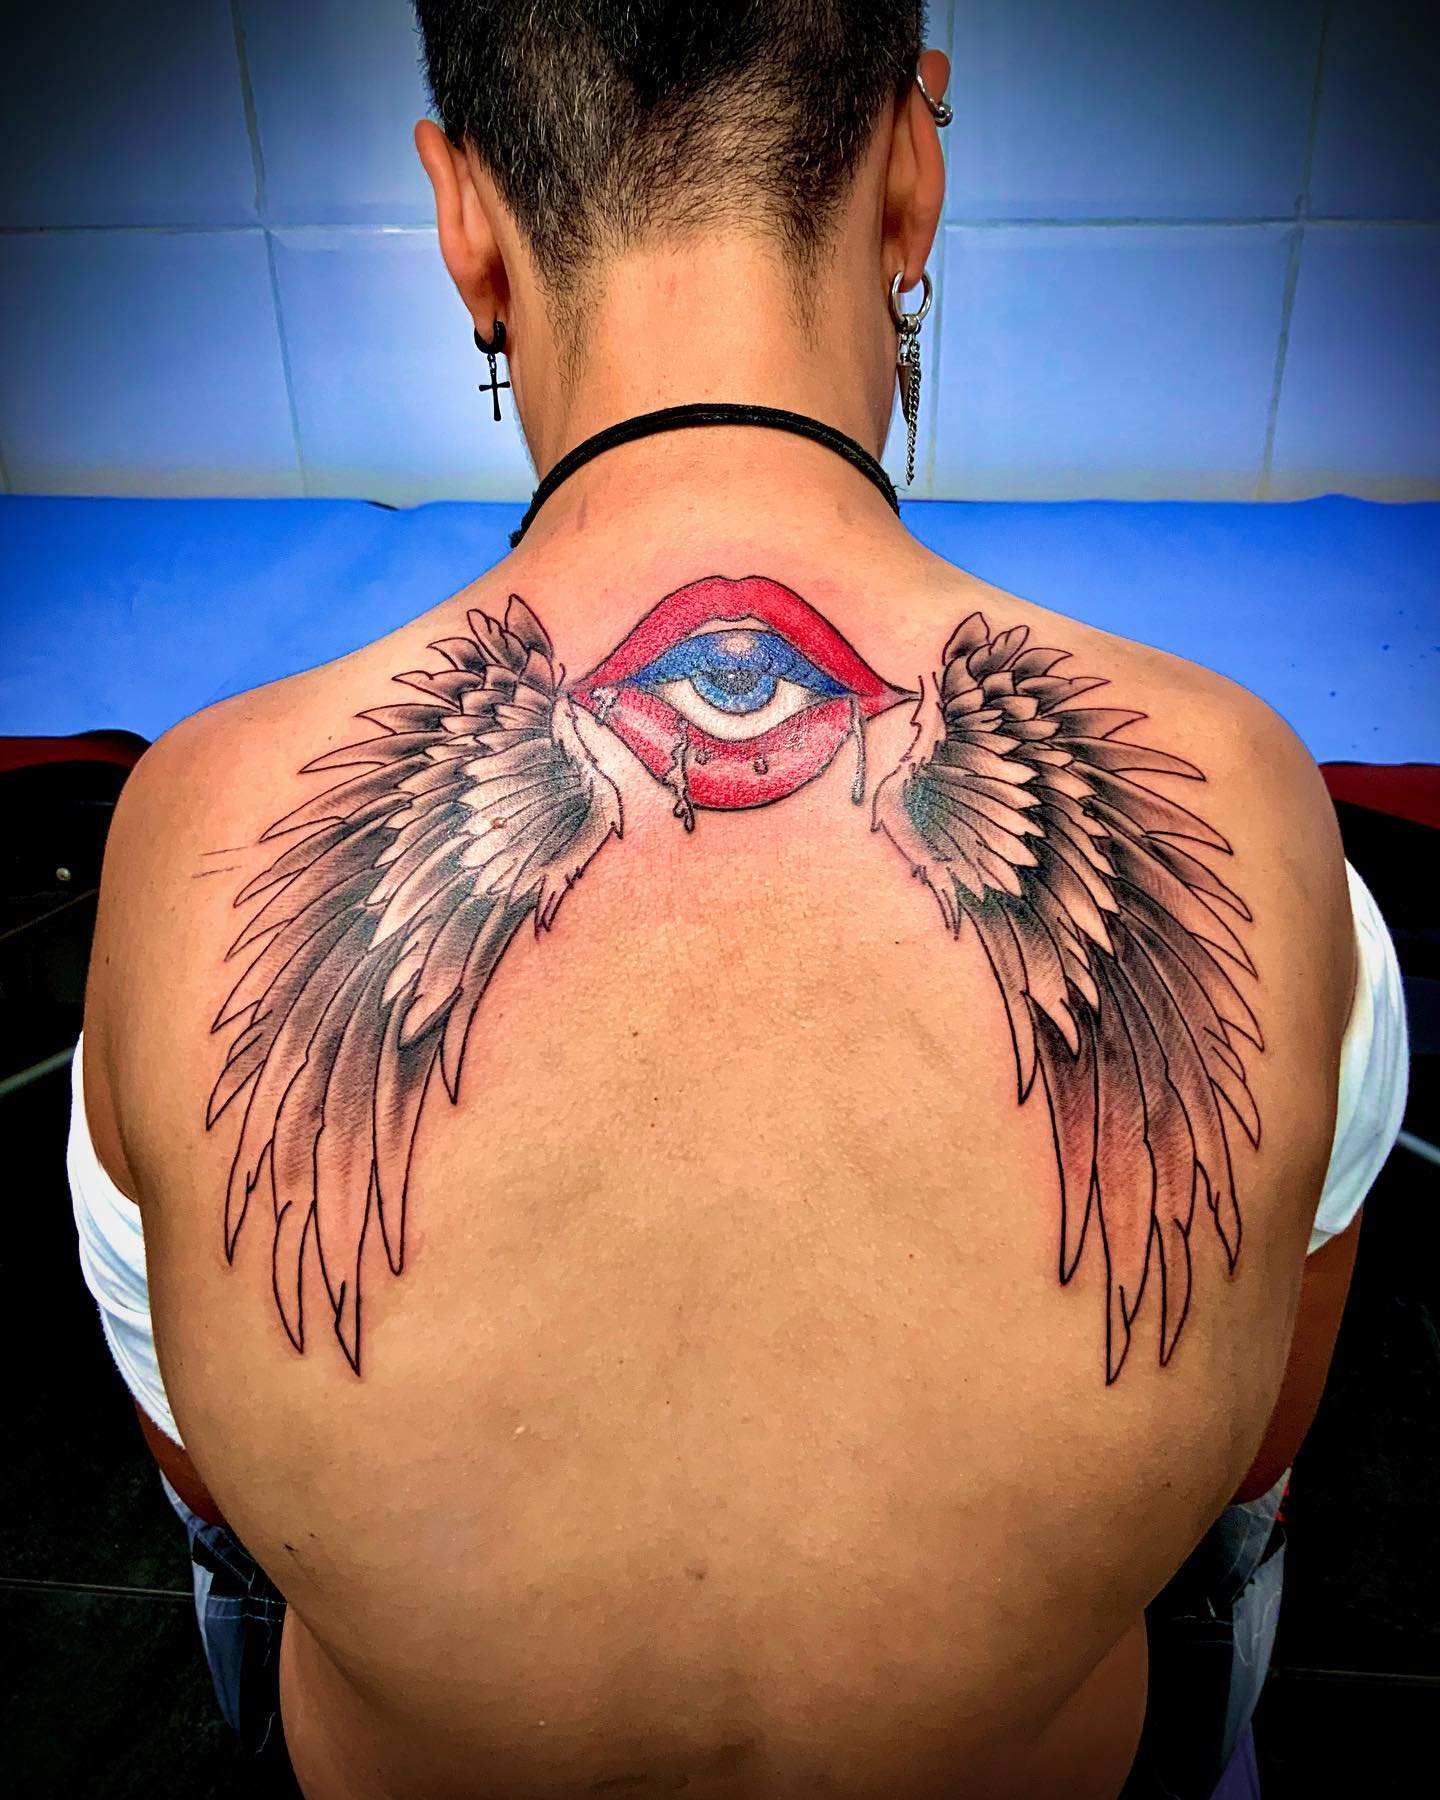 Tatuaje de alas en la espalda.